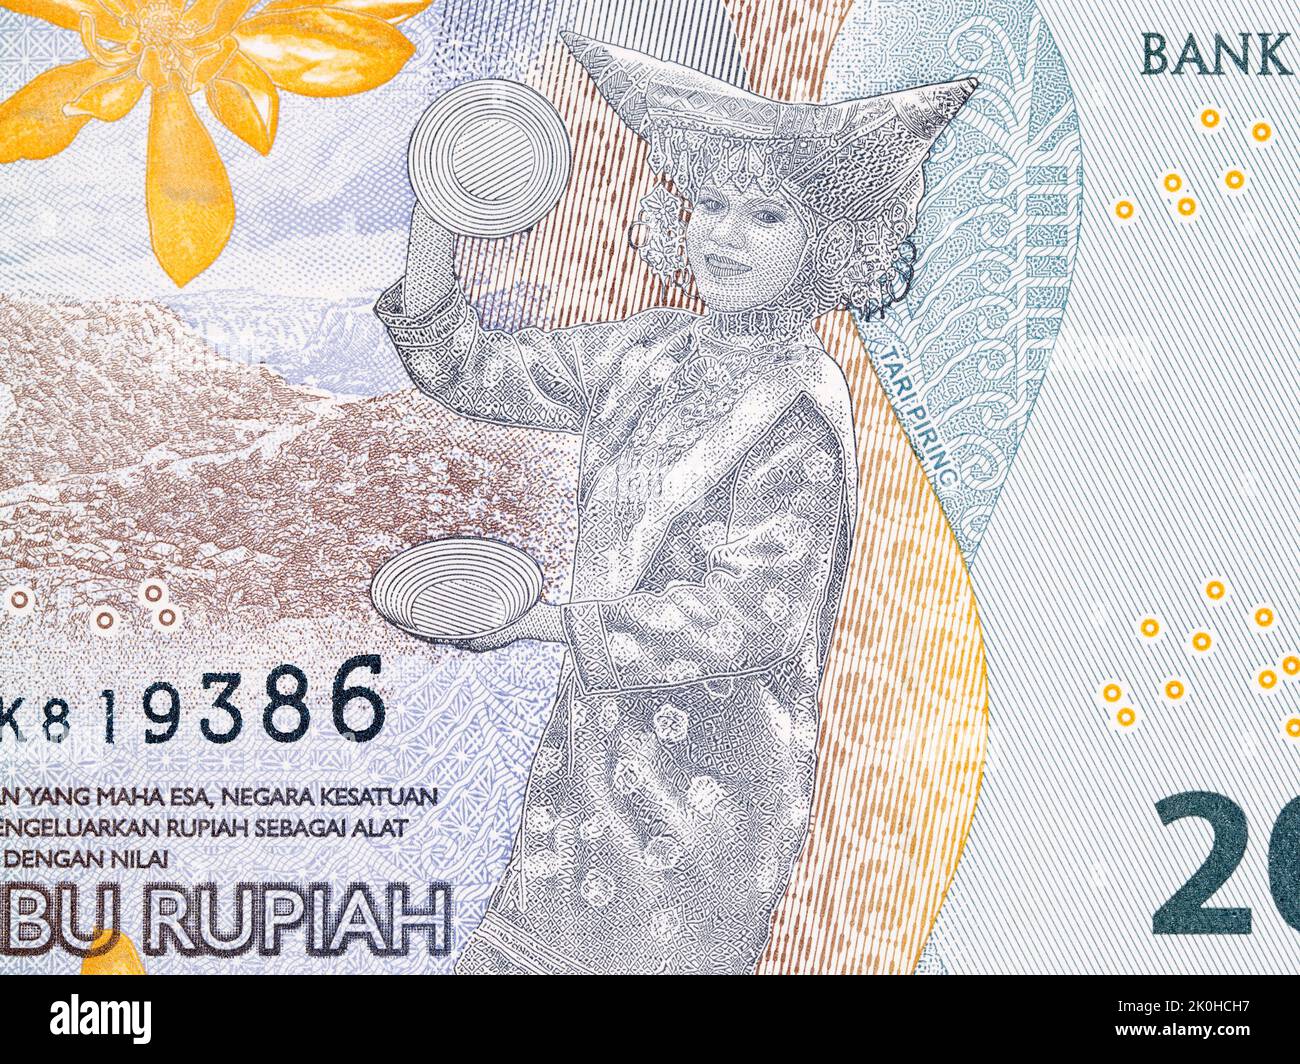 Piring dance from Indonesian money - Rupiah Stock Photo